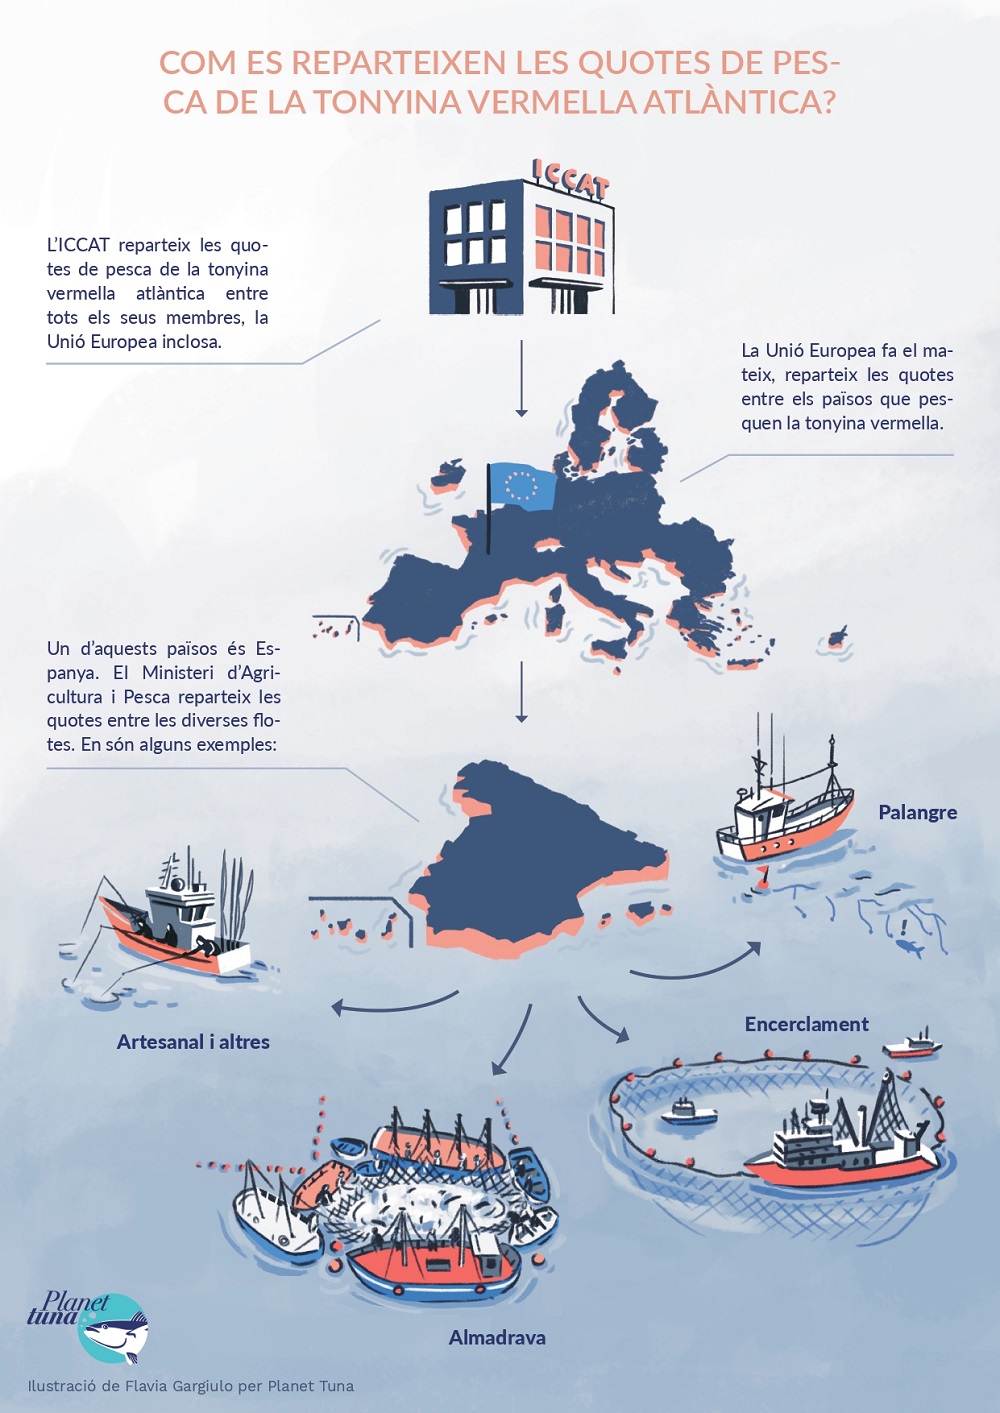 Infografia sobre el repartiment de quotes de tonyina vermella de l'Atlàntic a ICCAT